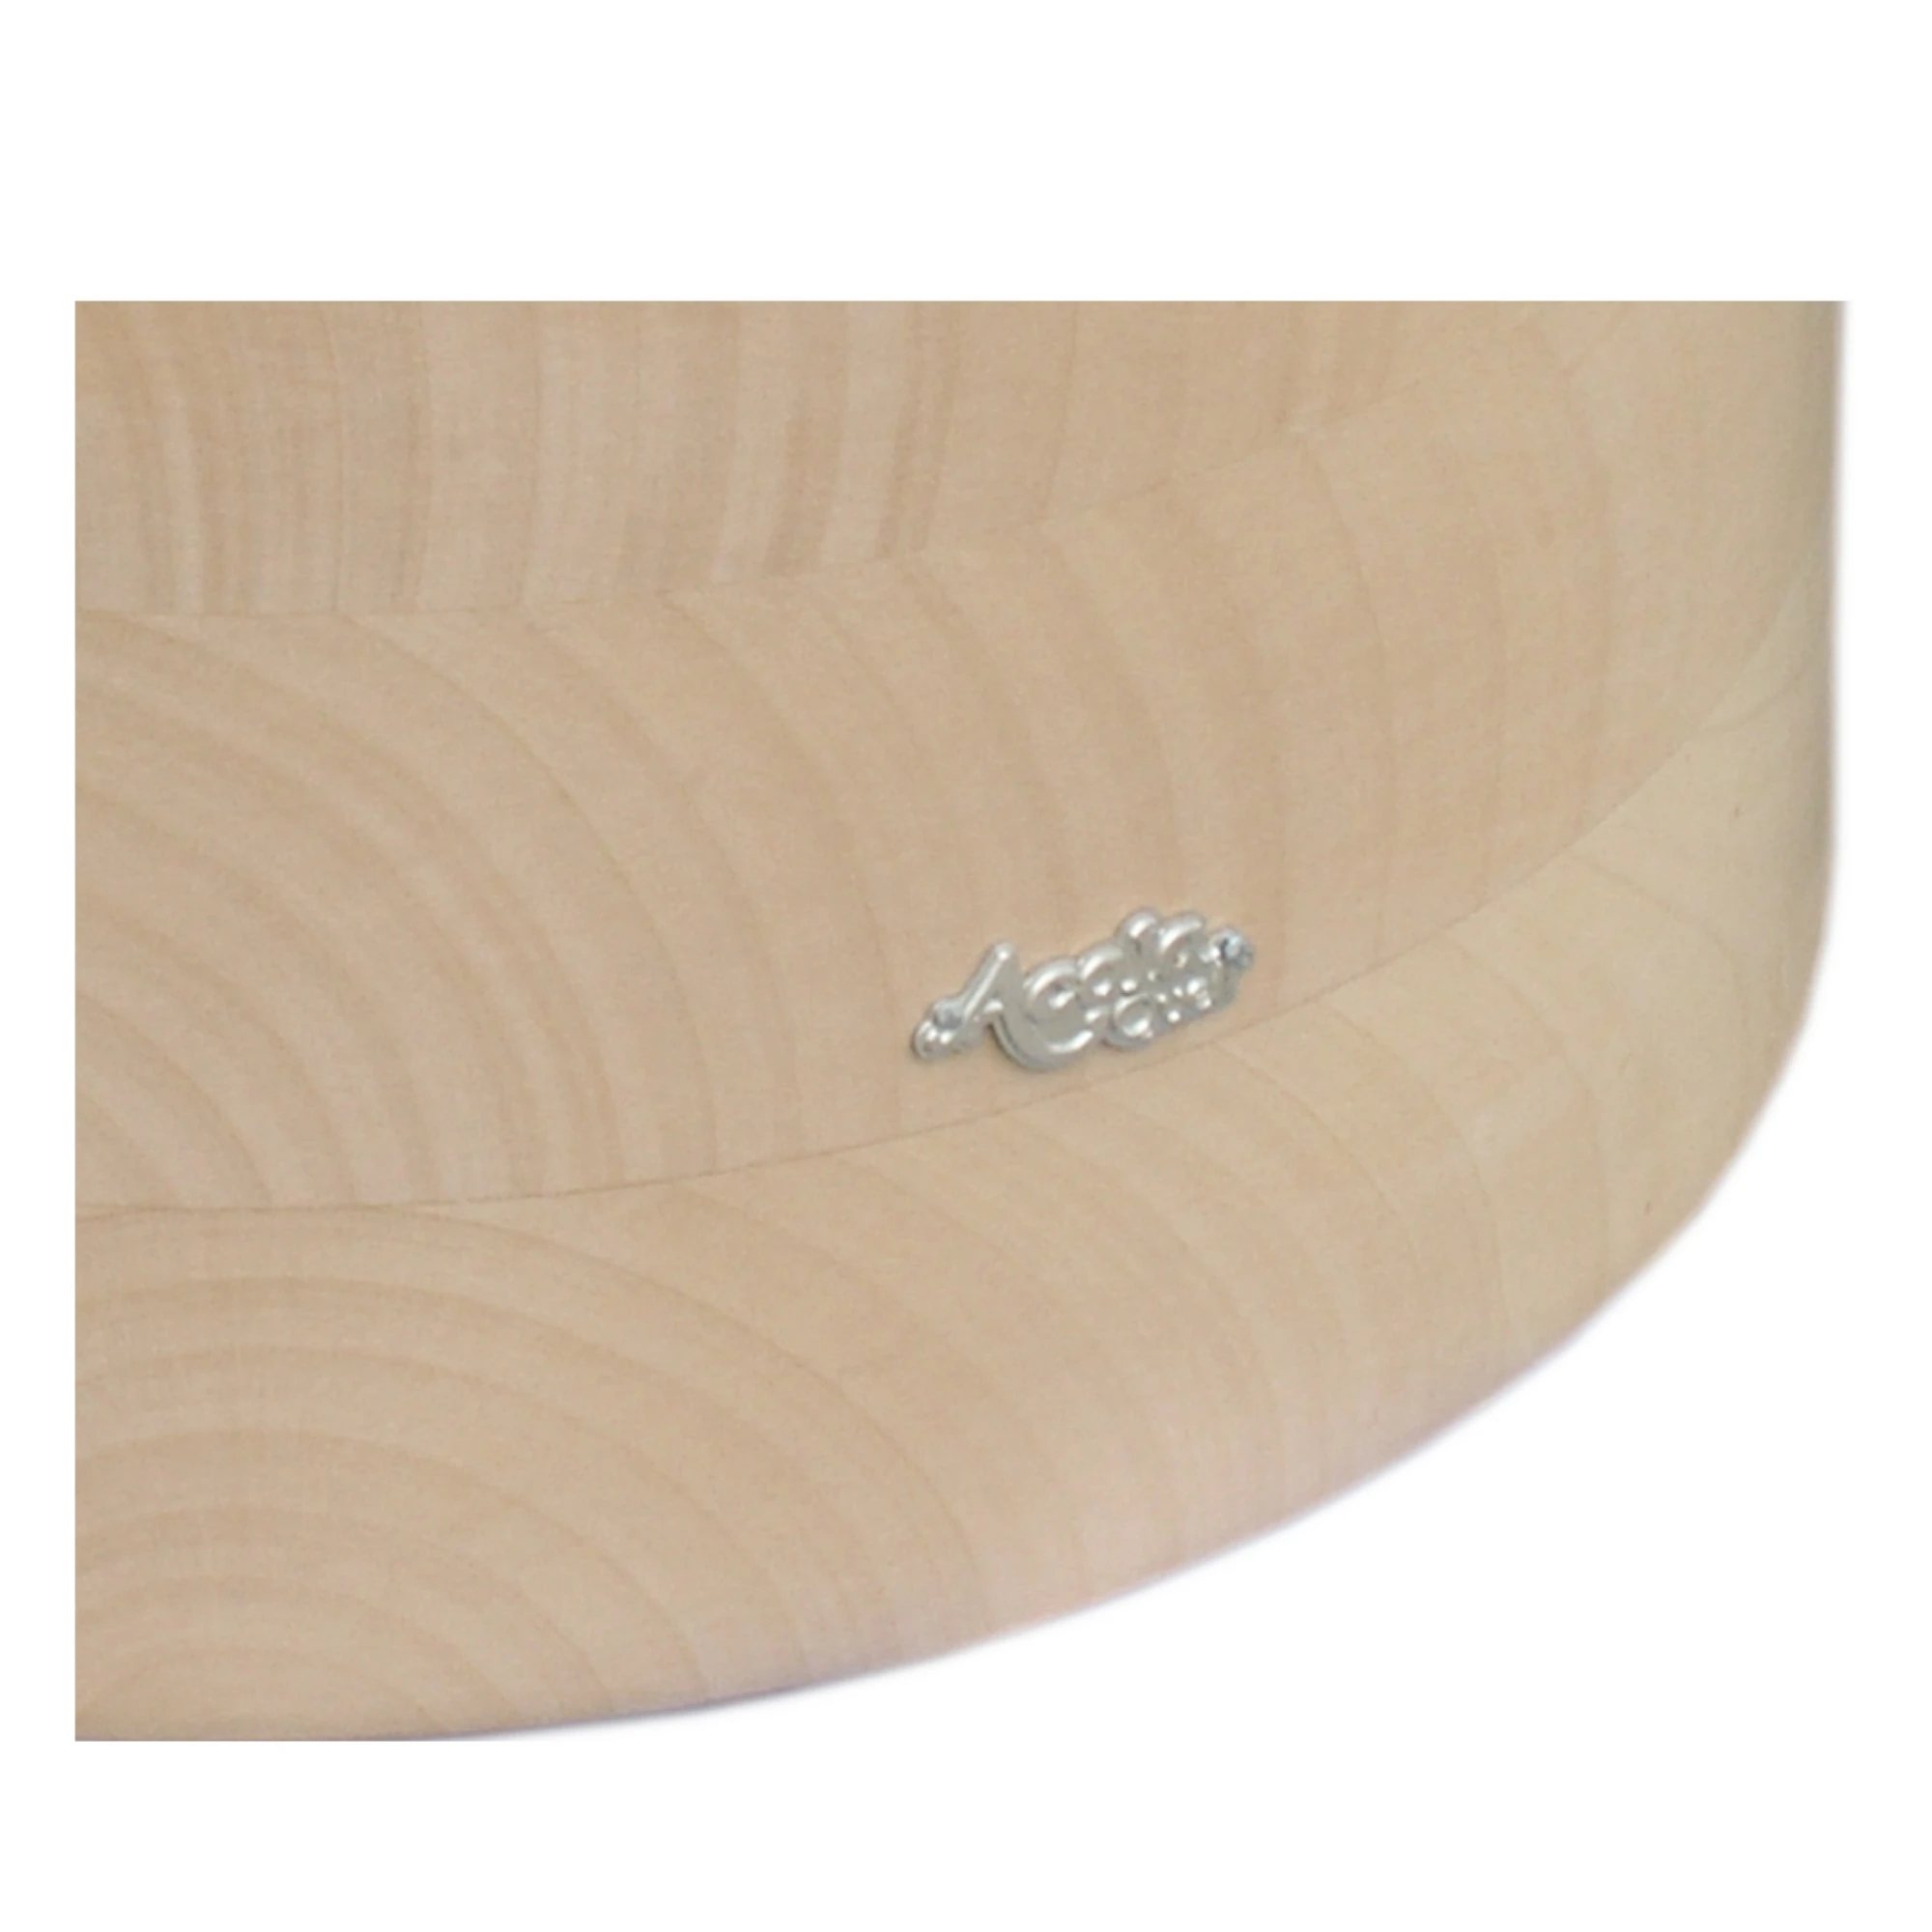 Zu sehen ist ein Großausschnitt eines Acala Echtholz Sockels aus Ahorn mit dem schlichten, silbernen Acala Logo darauf. 